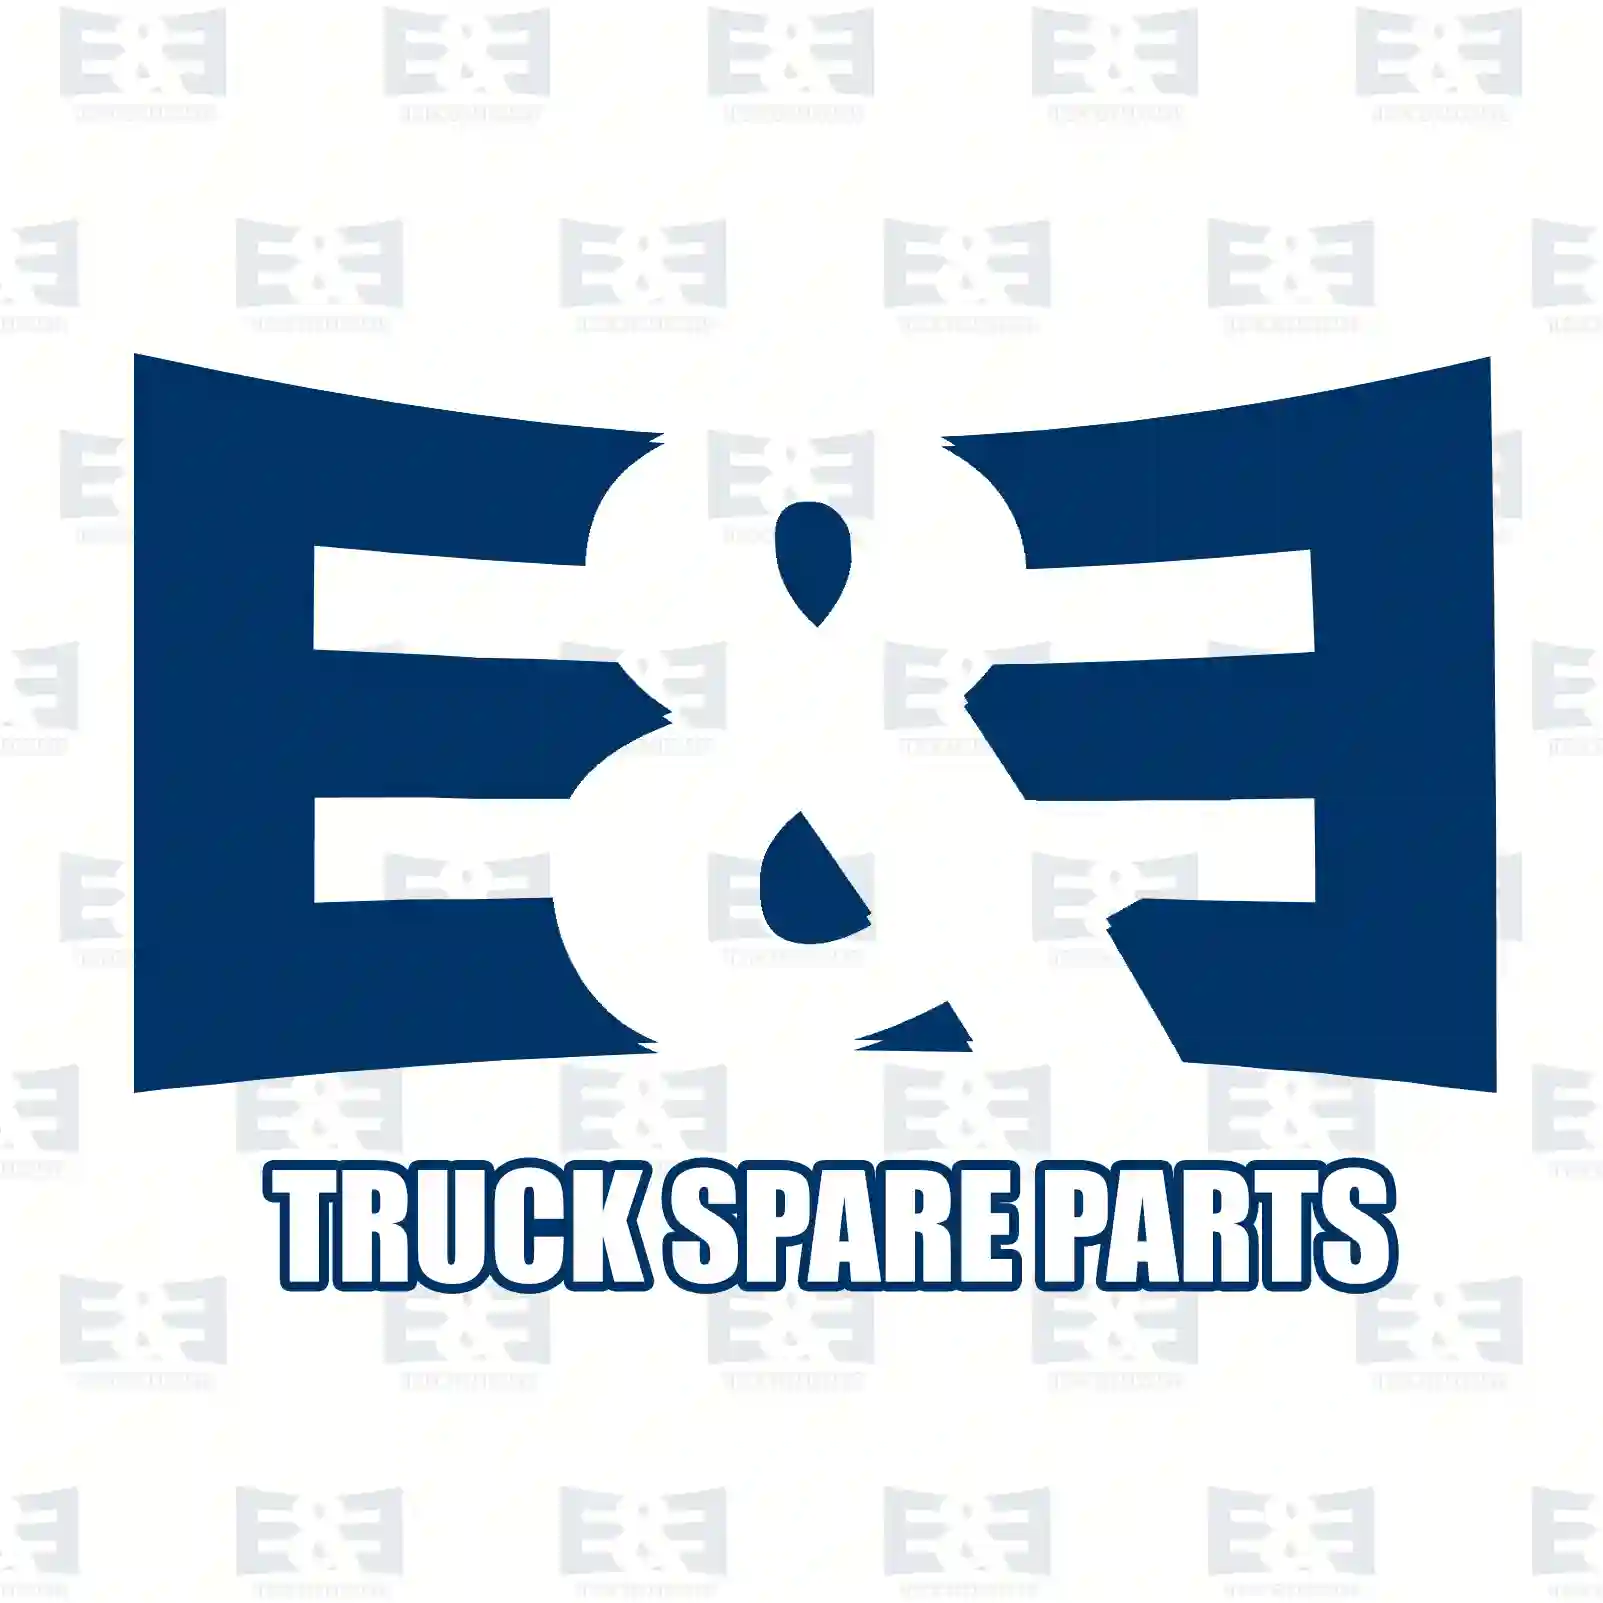  Parts kit, jack connector || E&E Truck Spare Parts | Truck Spare Parts, Auotomotive Spare Parts